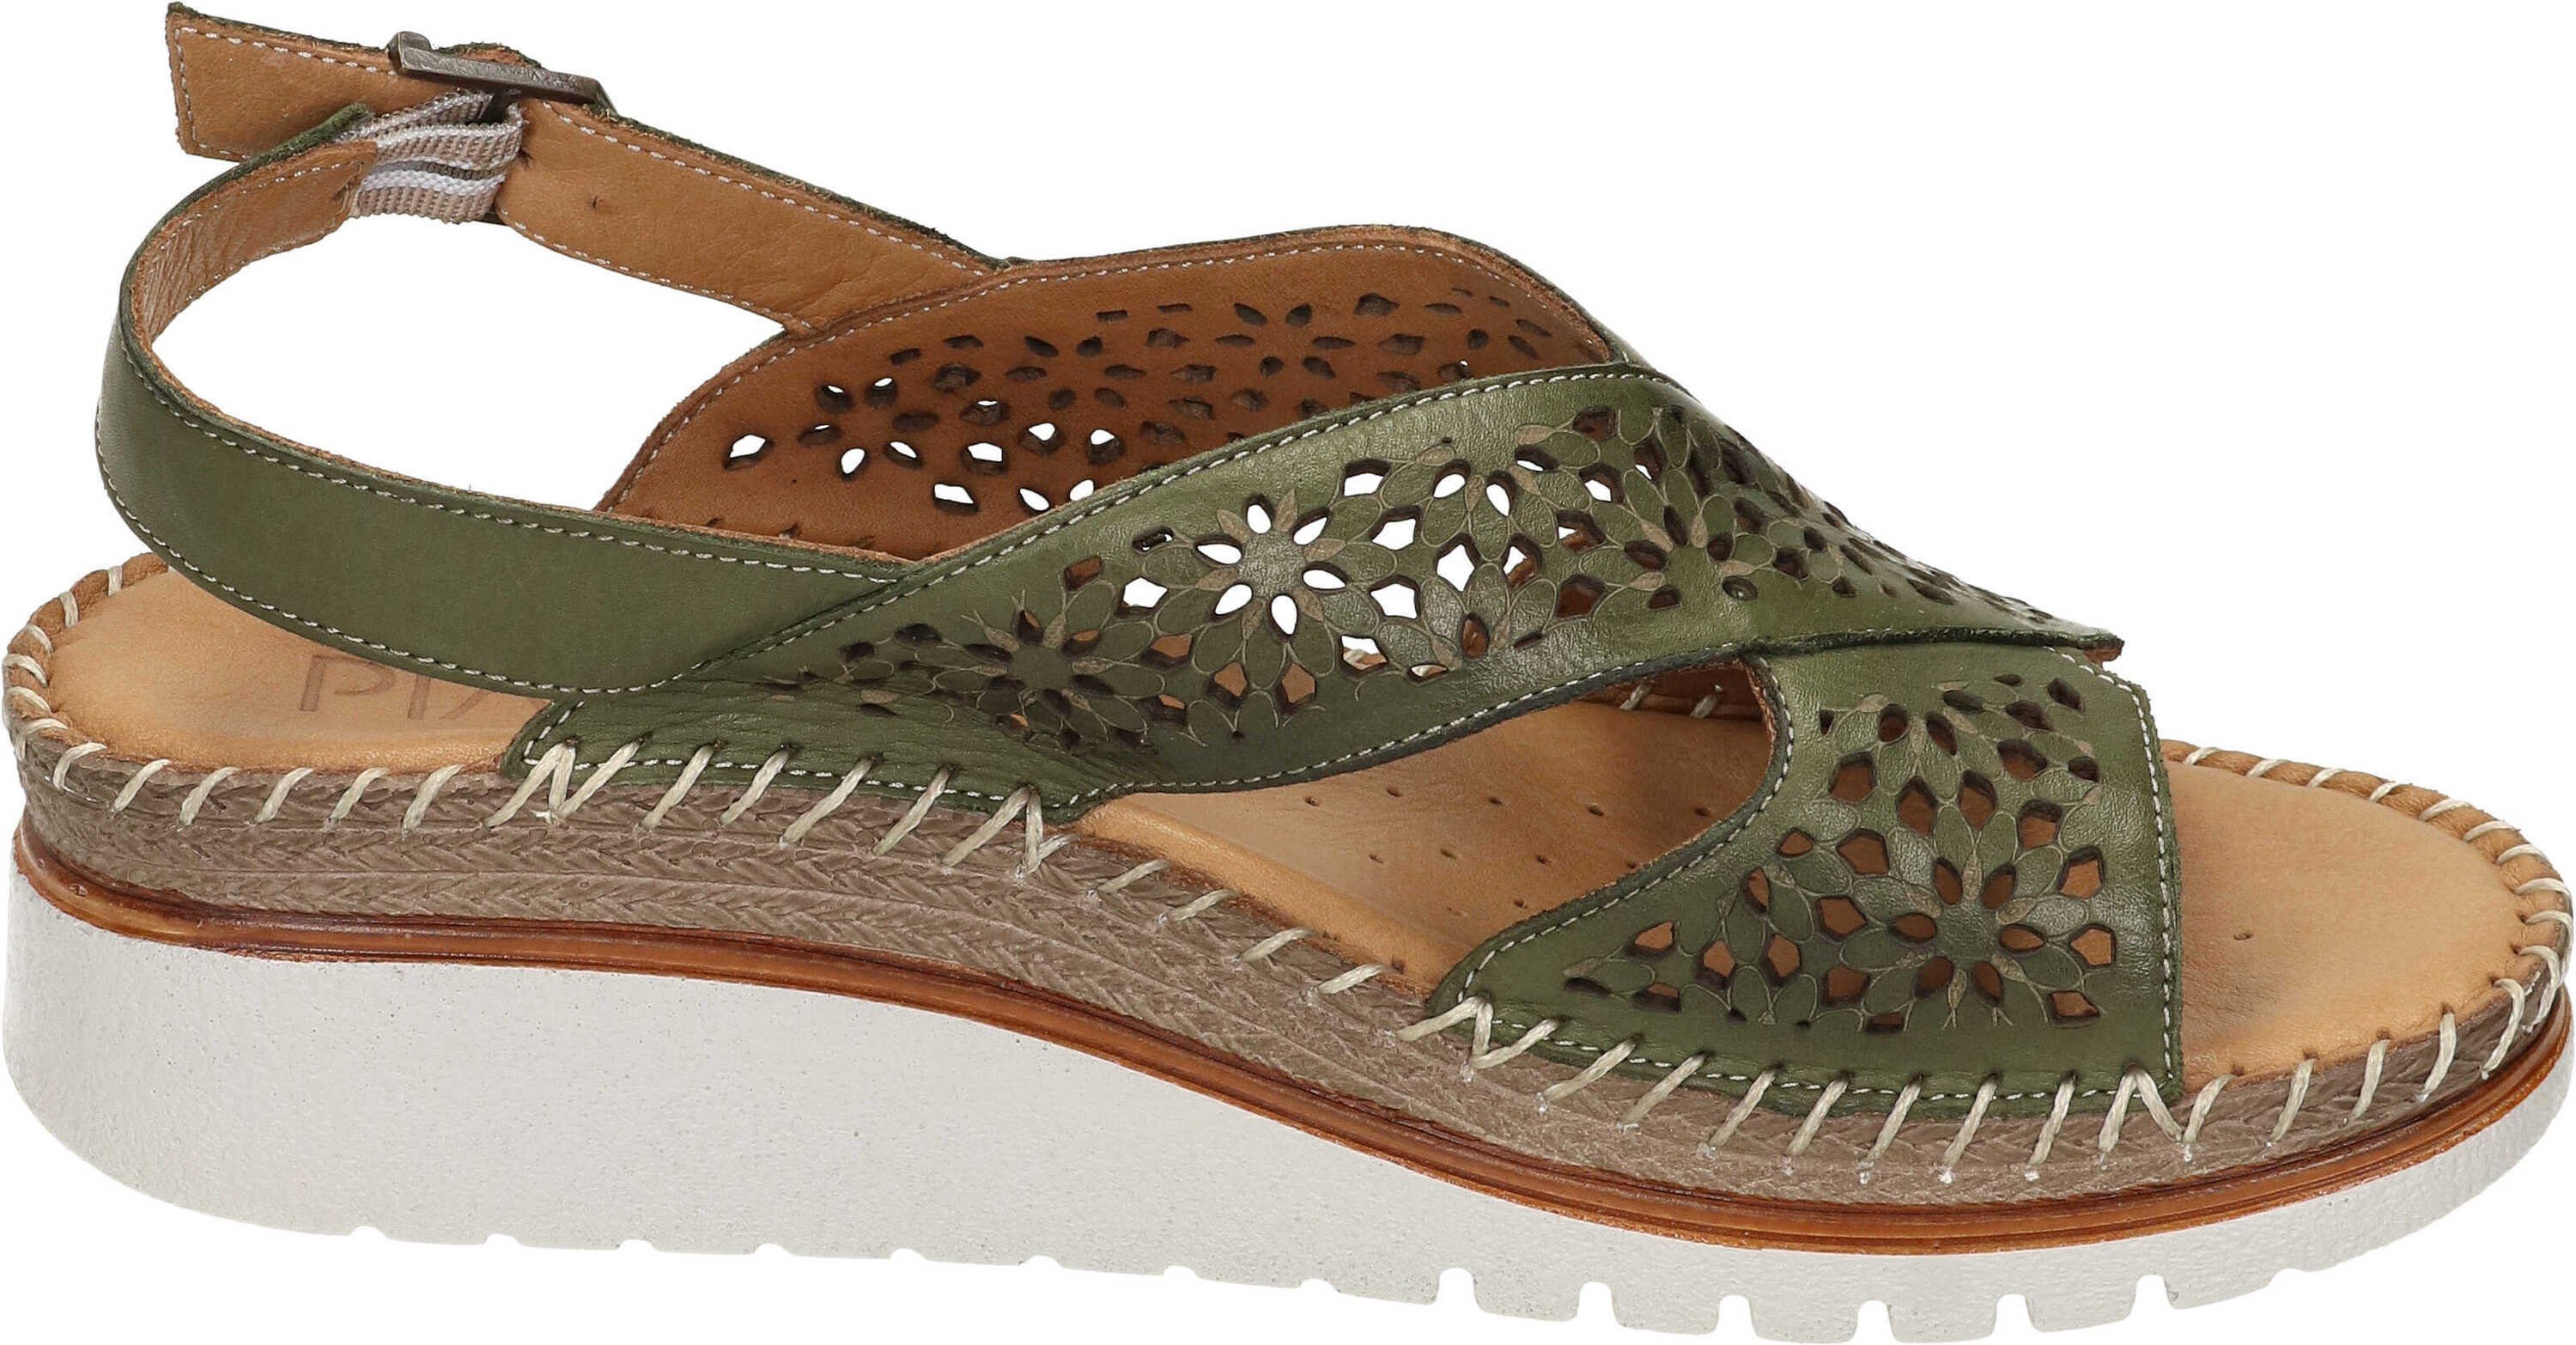 Sandalette echtem aus Leder grün Piazza Sandalen